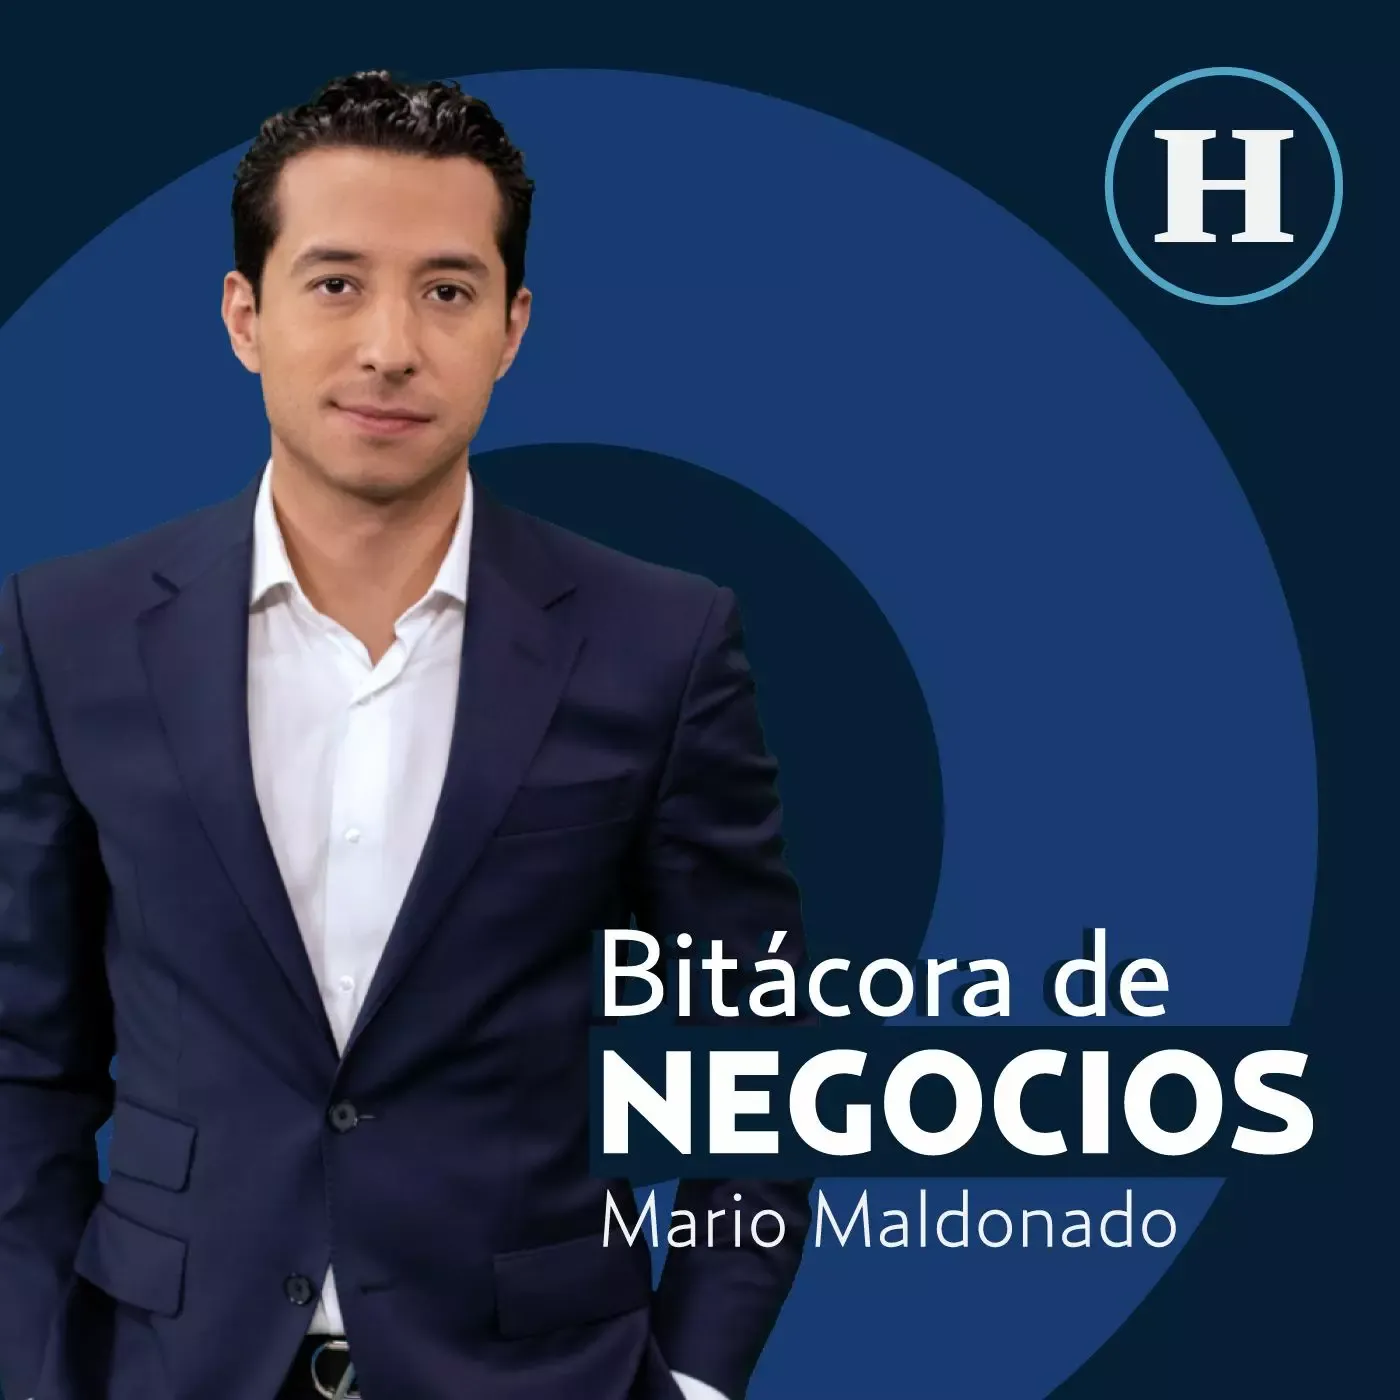 Bitacora de Negocios con Mario Maldonado en Heraldo Radio